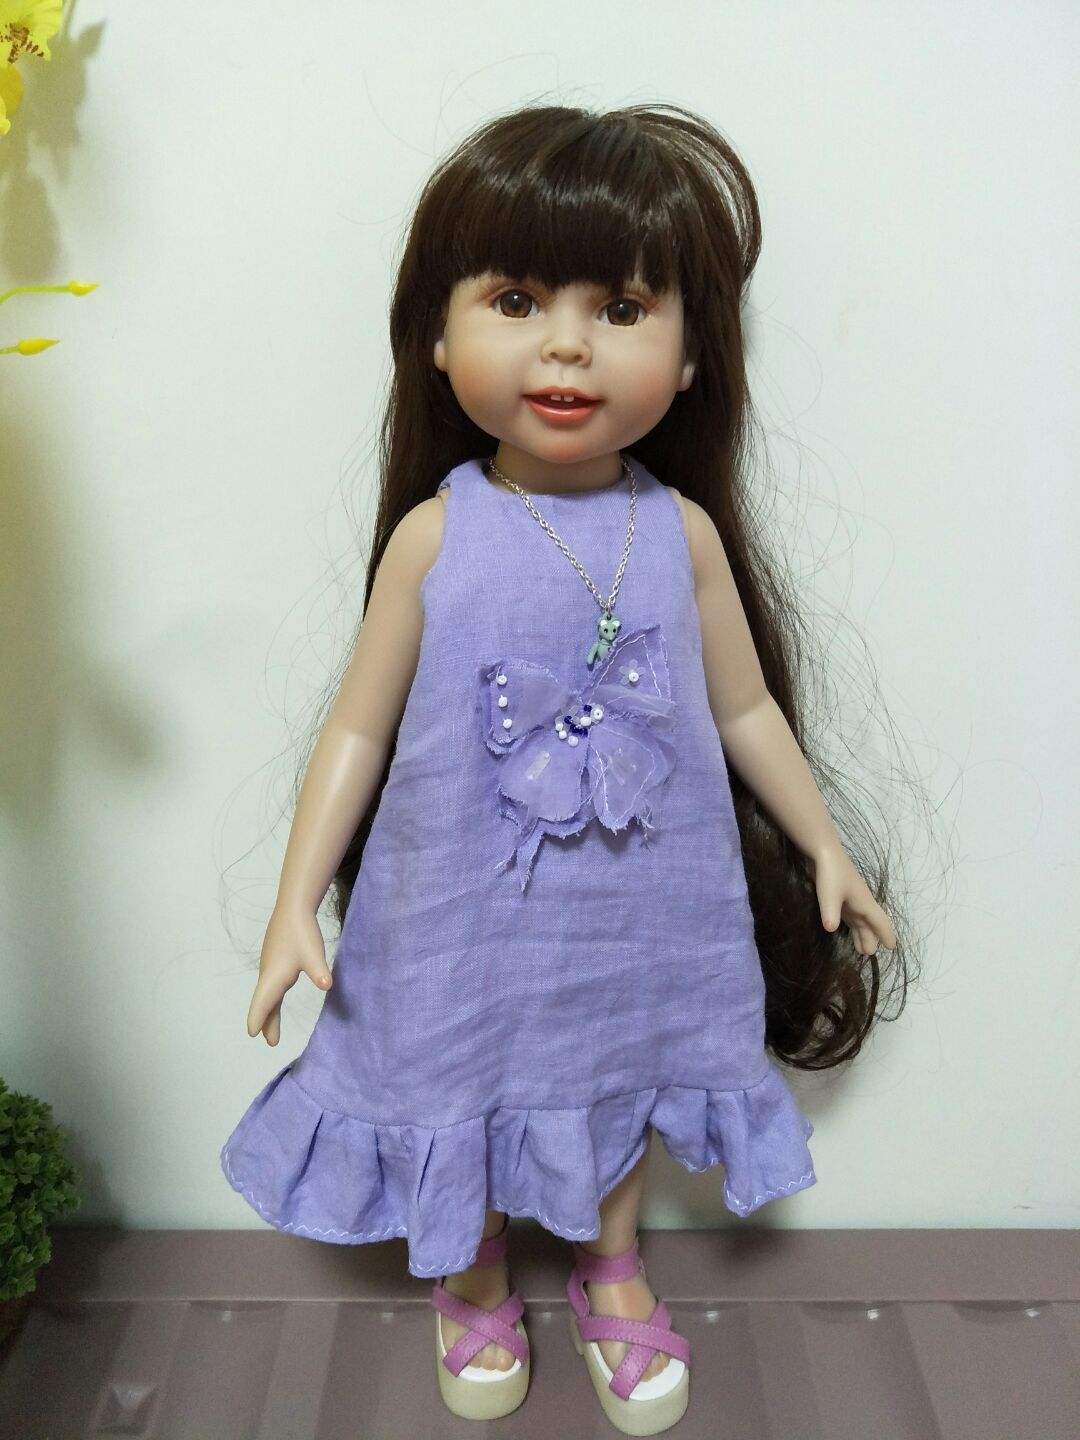 连衣裙 跟18寸的沙龙娃娃的衣服尺寸一般大